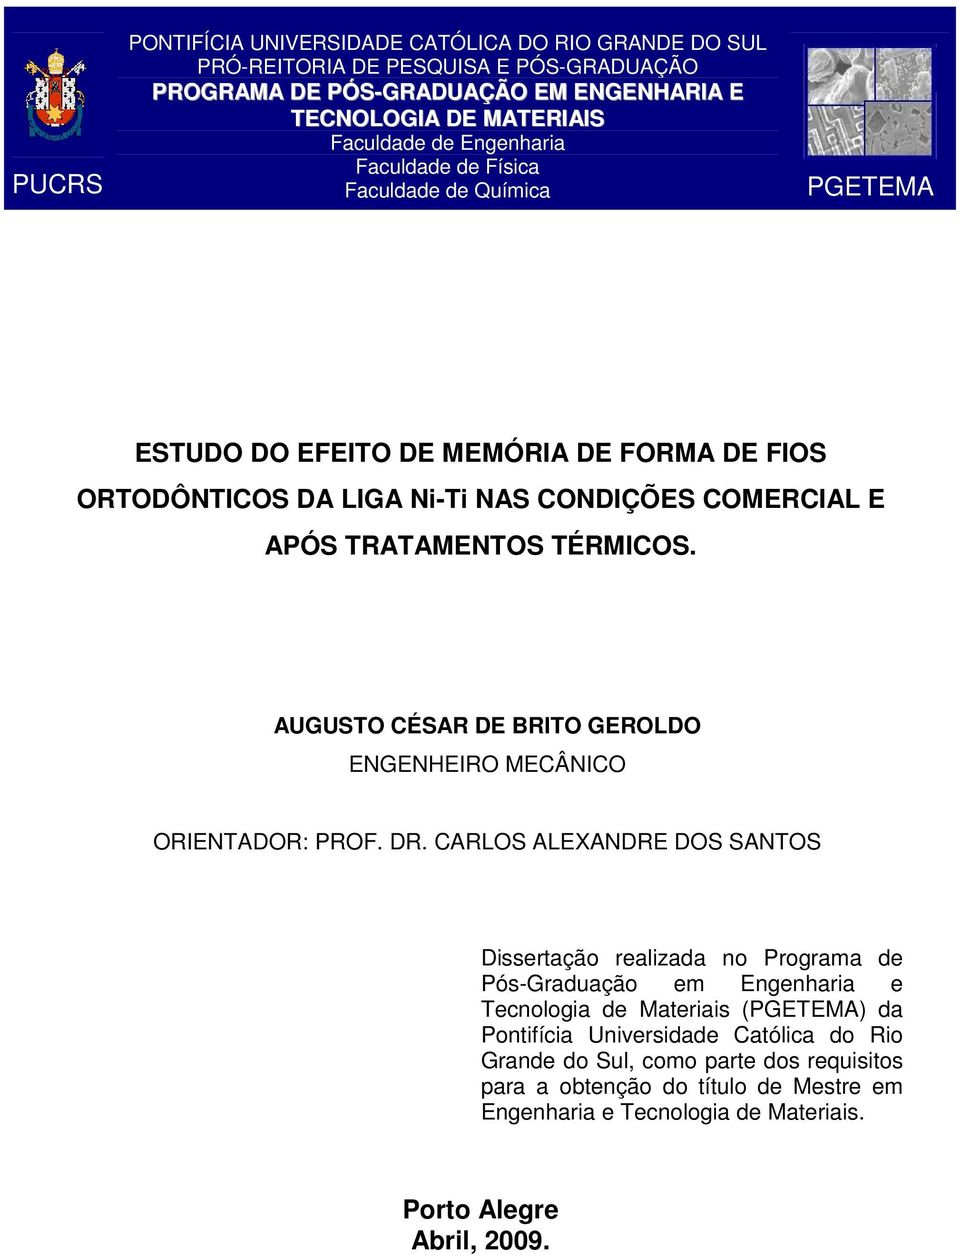 AUGUSTO CÉSAR DE BRITO GEROLDO ENGENHEIRO MECÂNICO ORIENTADOR: PROF. DR.